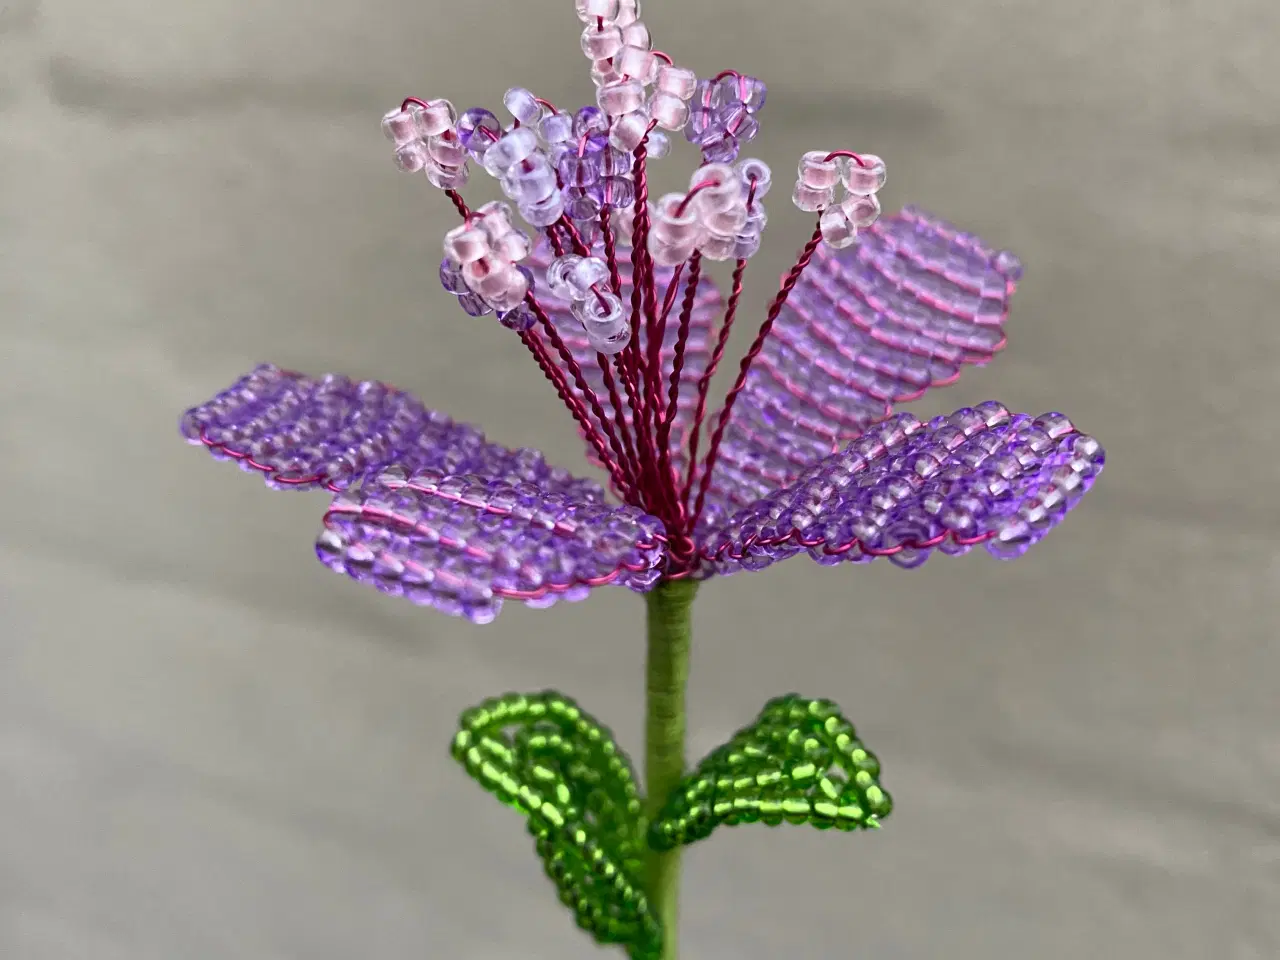 Billede 13 - Unikke evigheds blomster, lavet af perler